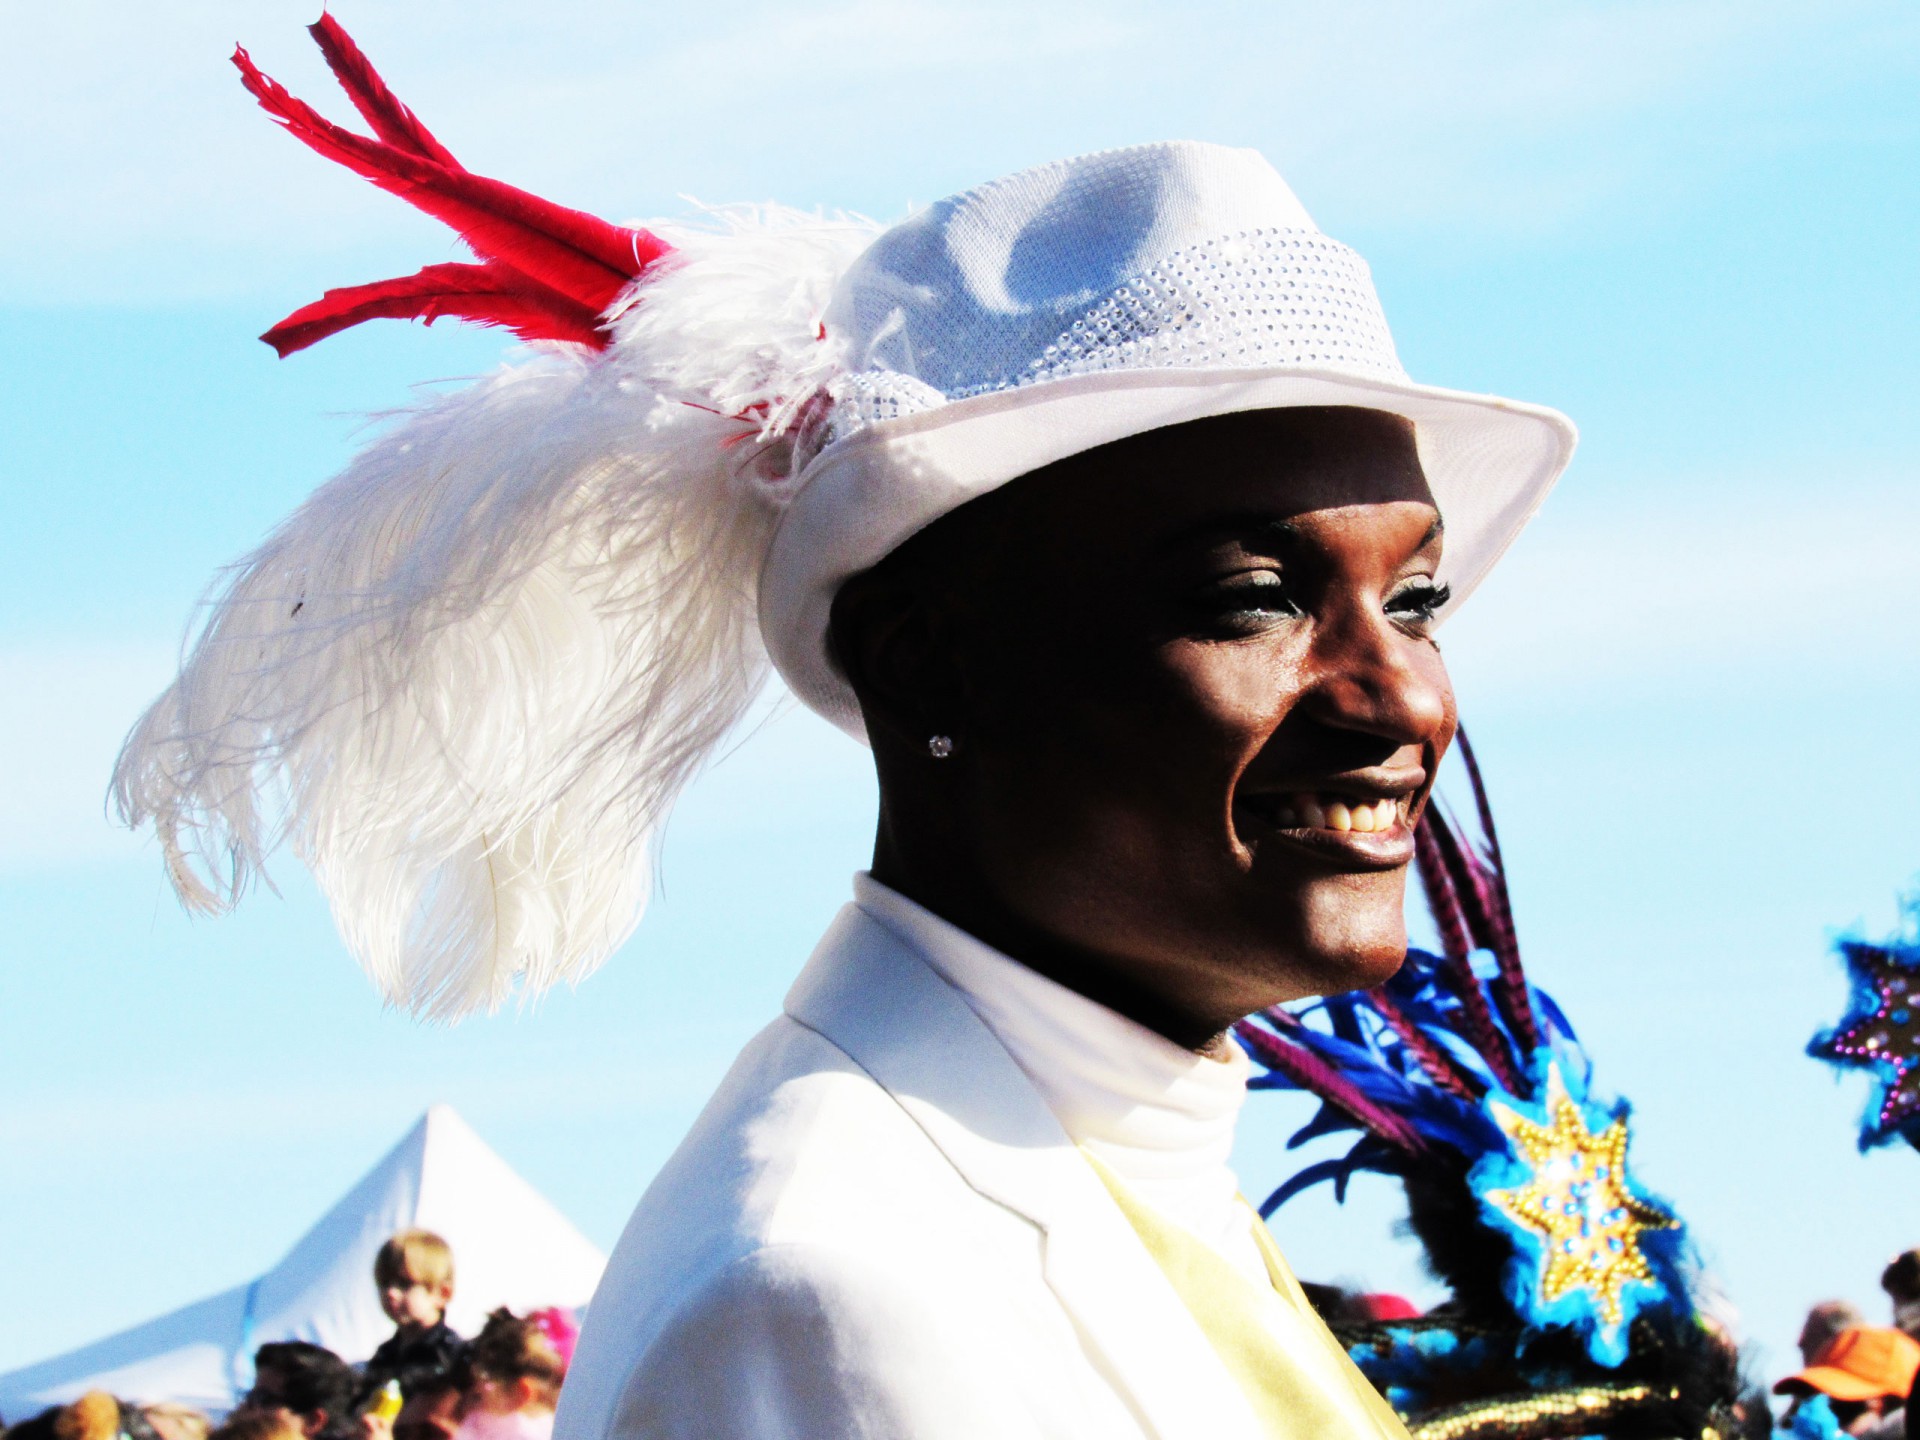 Carnaval de Niza 2016: Le Roi des Médias. CUERPO Y COMPAÑÍA DE DANZA. + de VIDÉOS !!! Février 2016. Desfile de Carnaval , baile latino